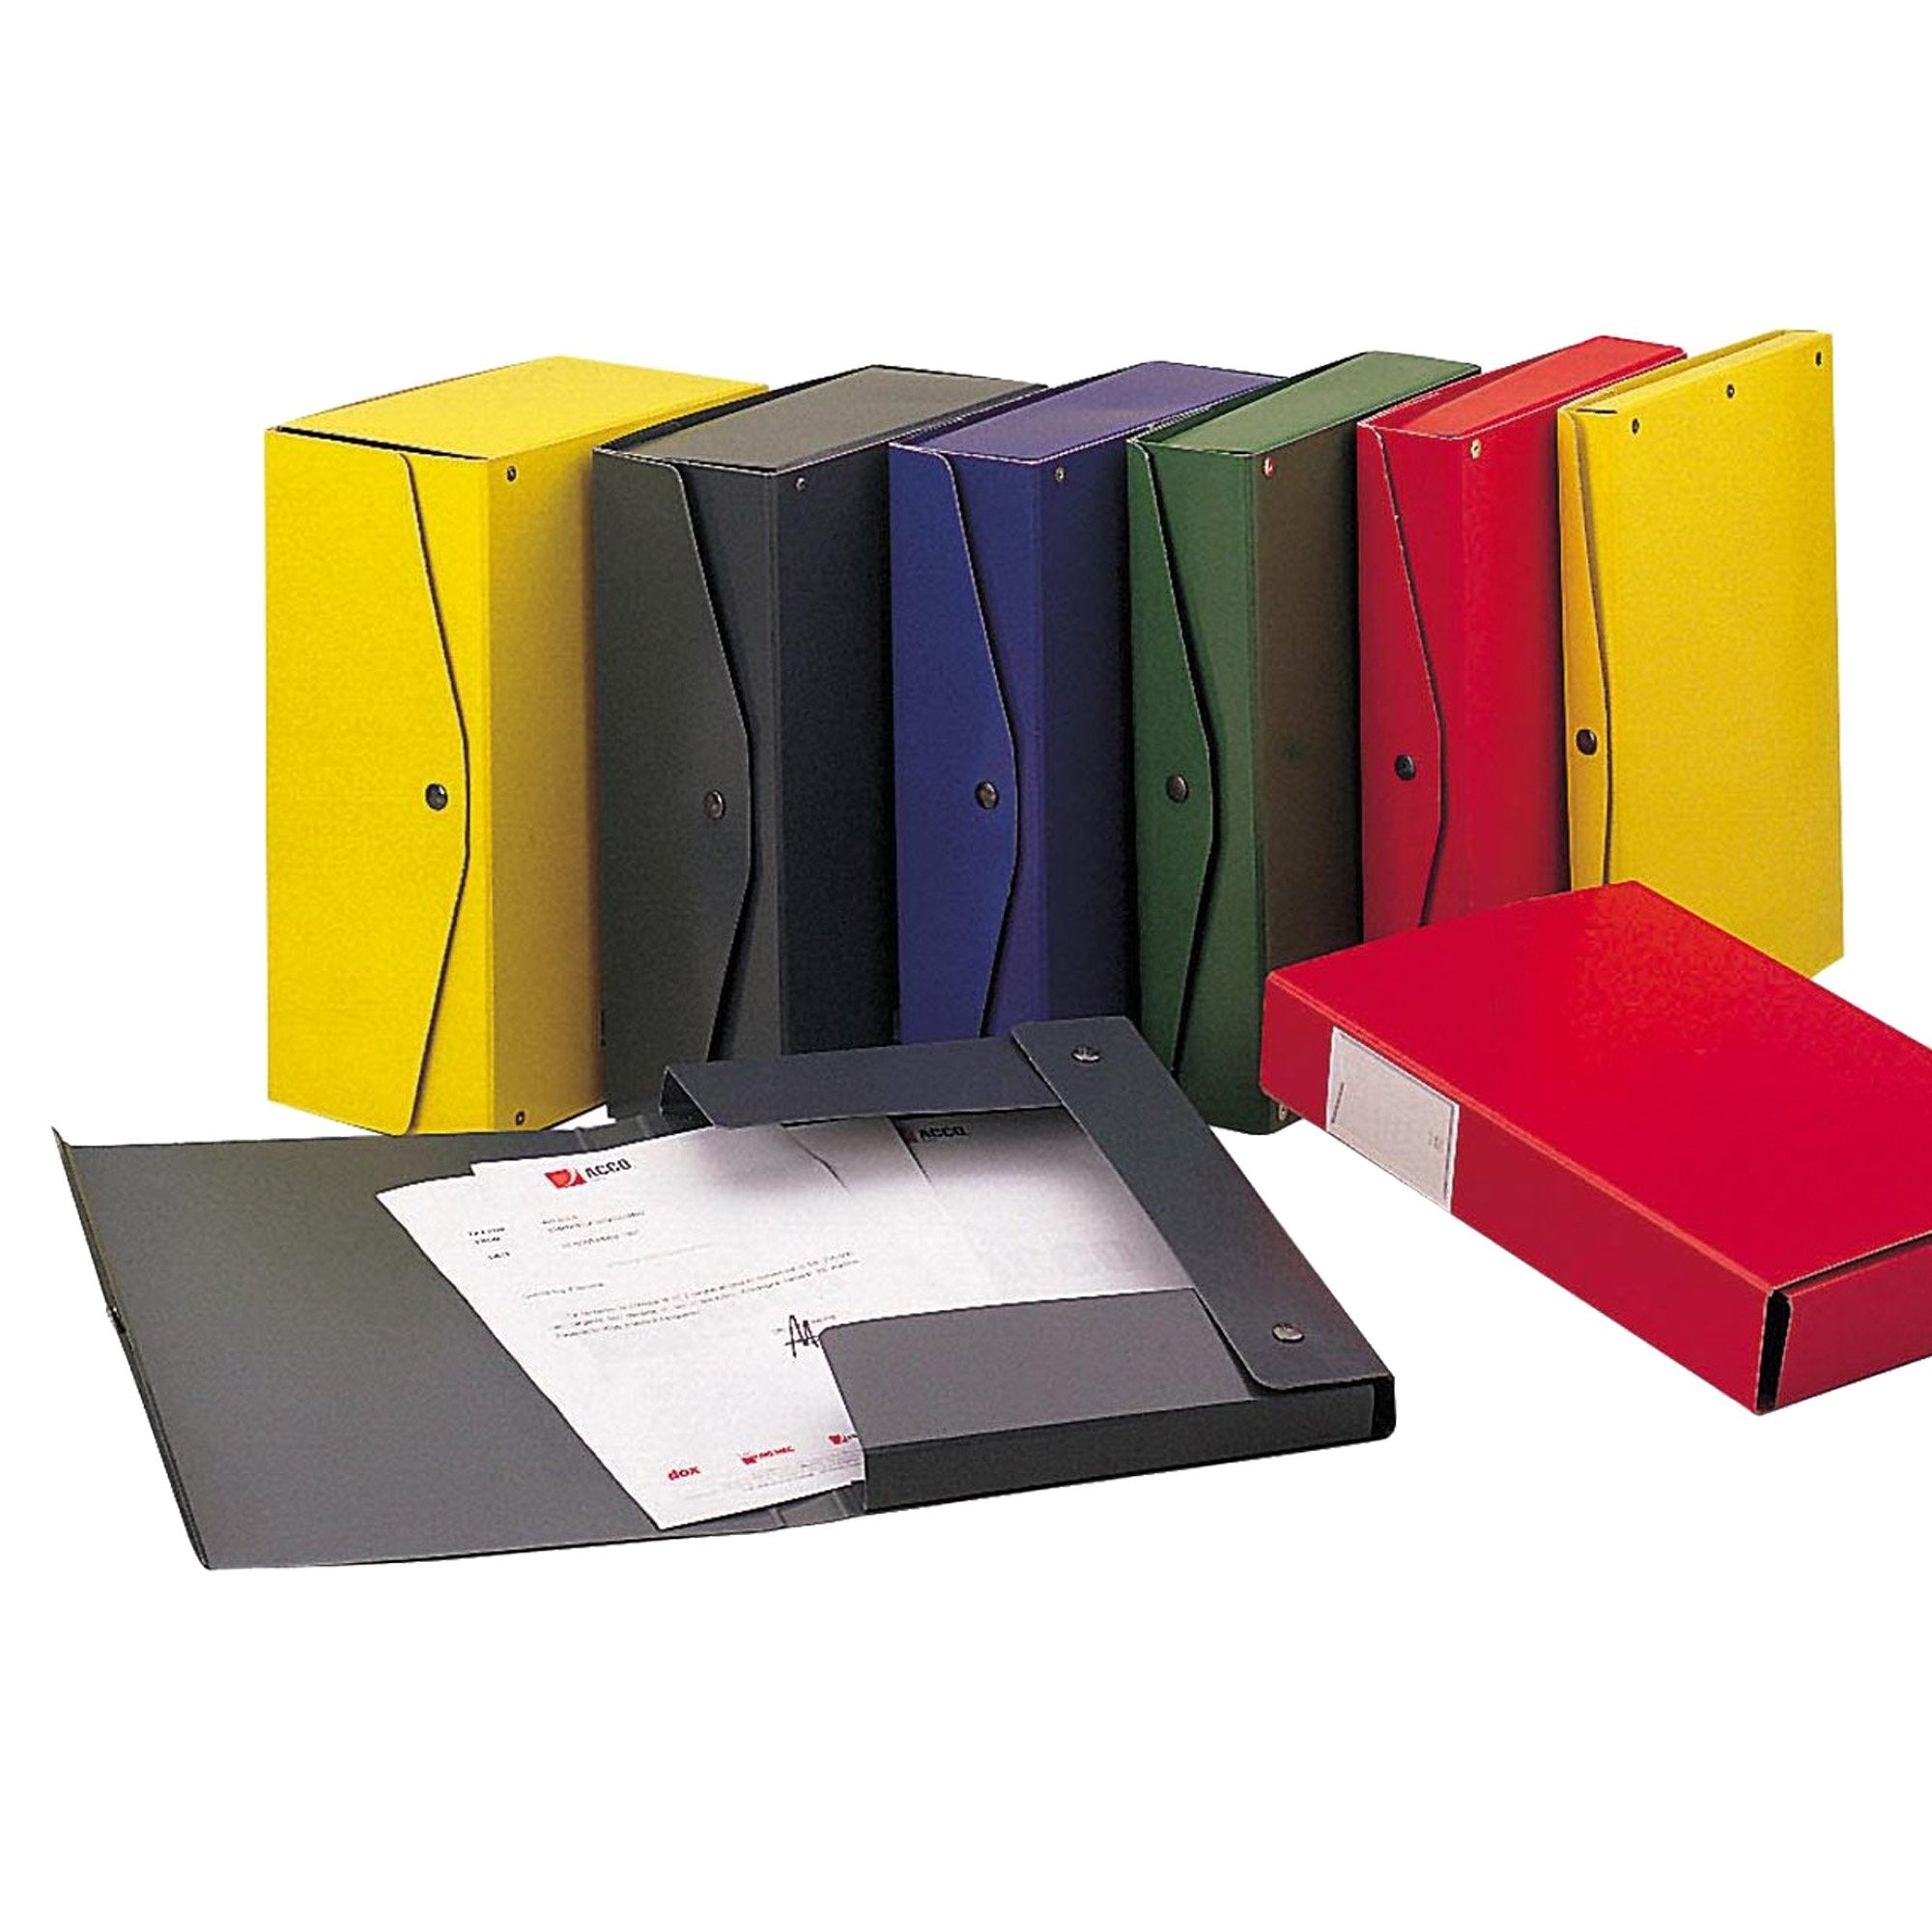 king-mec-scatola-archivio-project-8-rosso-25x35cm-dorso-8cm